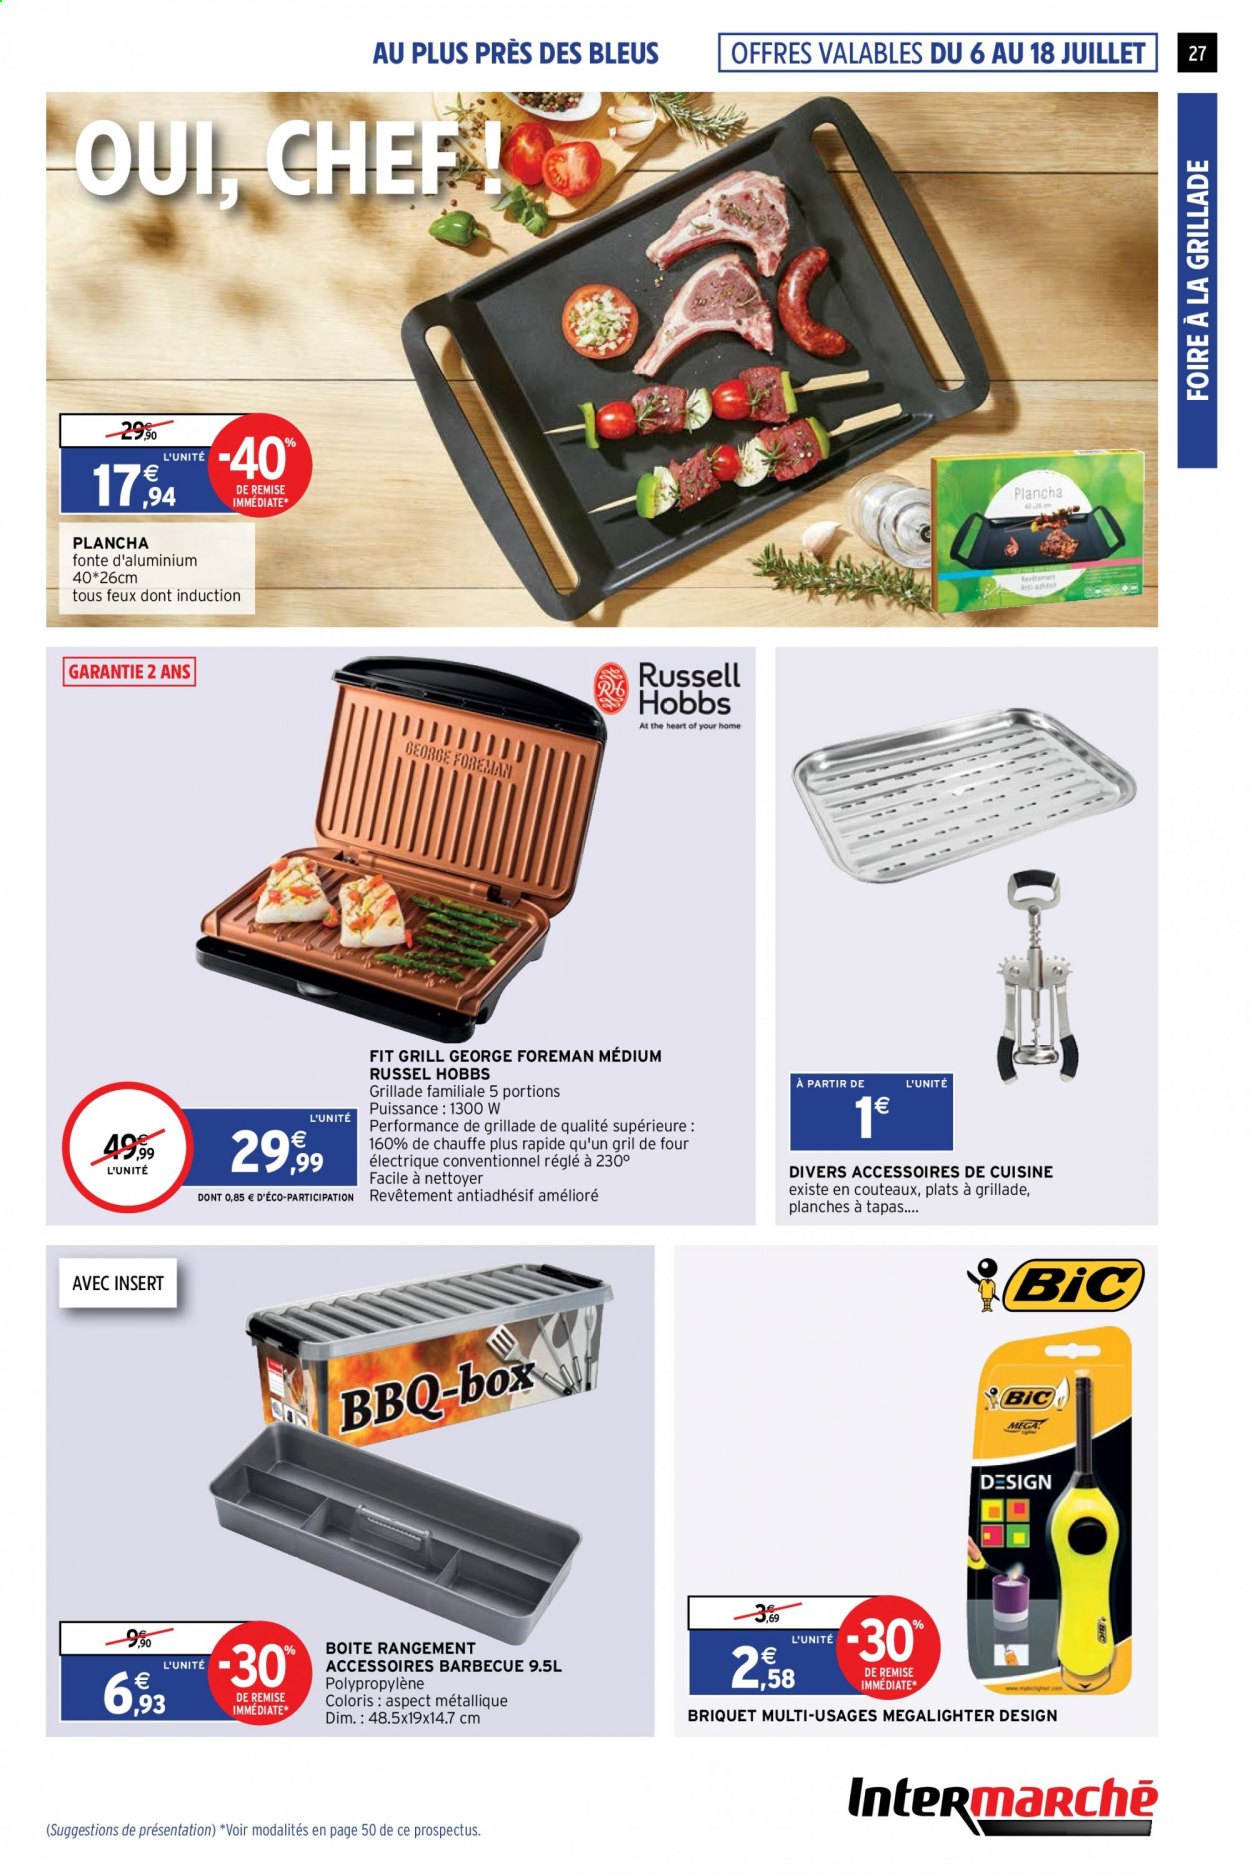 thumbnail - Catalogue Intermarché Hyper - 06/07/2021 - 11/07/2021 - Produits soldés - tapas, briquet, barbecue, grill, plancha. Page 27.